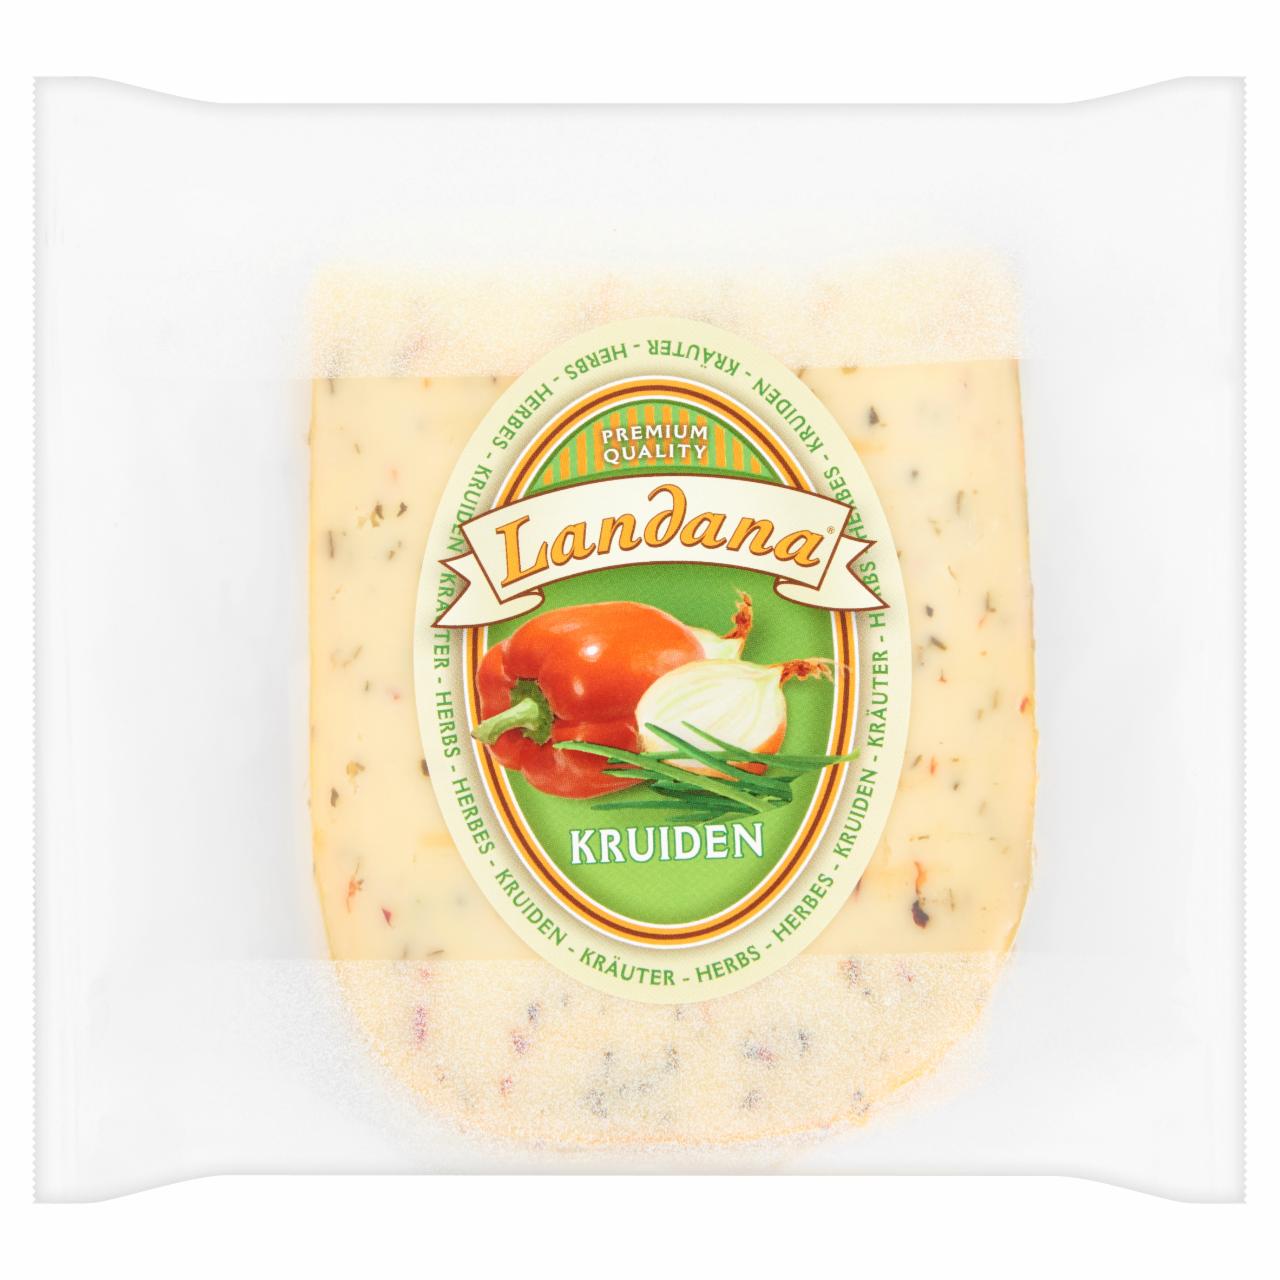 Képek - Landana zöldfűszeres gouda sajt 200 g